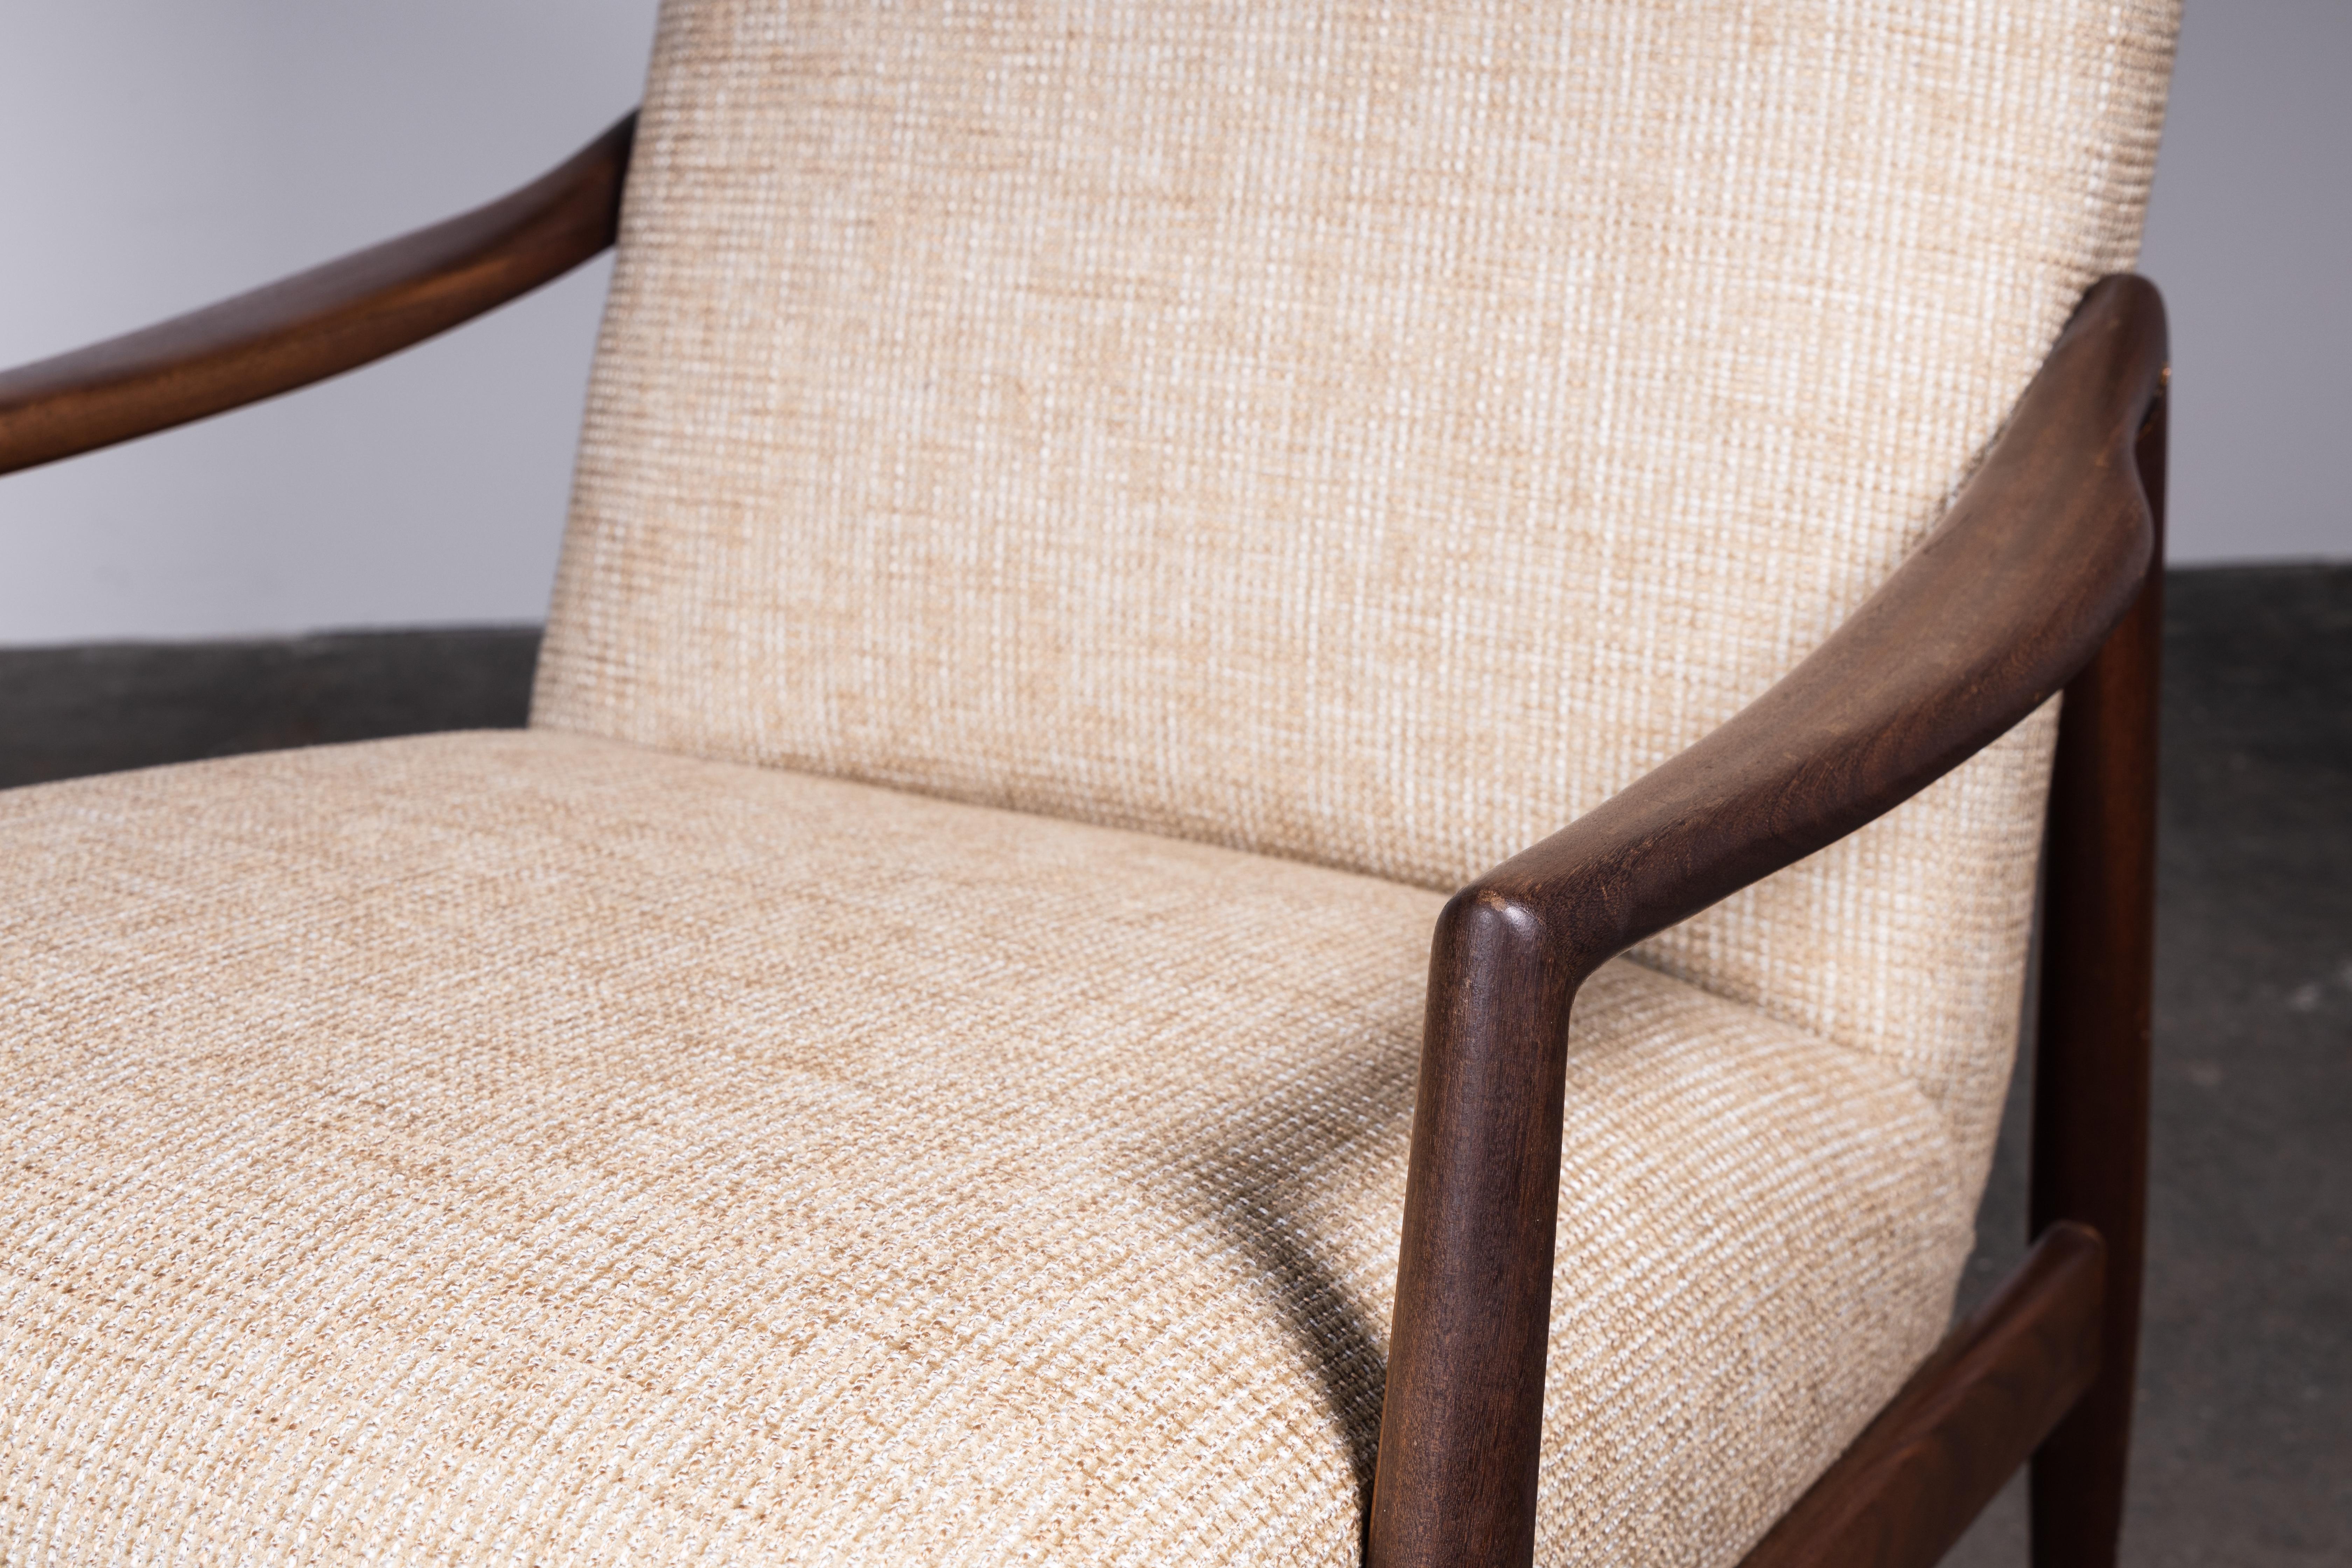 1950s Teak Living Room Sofa Set by Lohmeyer Upholstered à la Coco Chanel For Sale 3